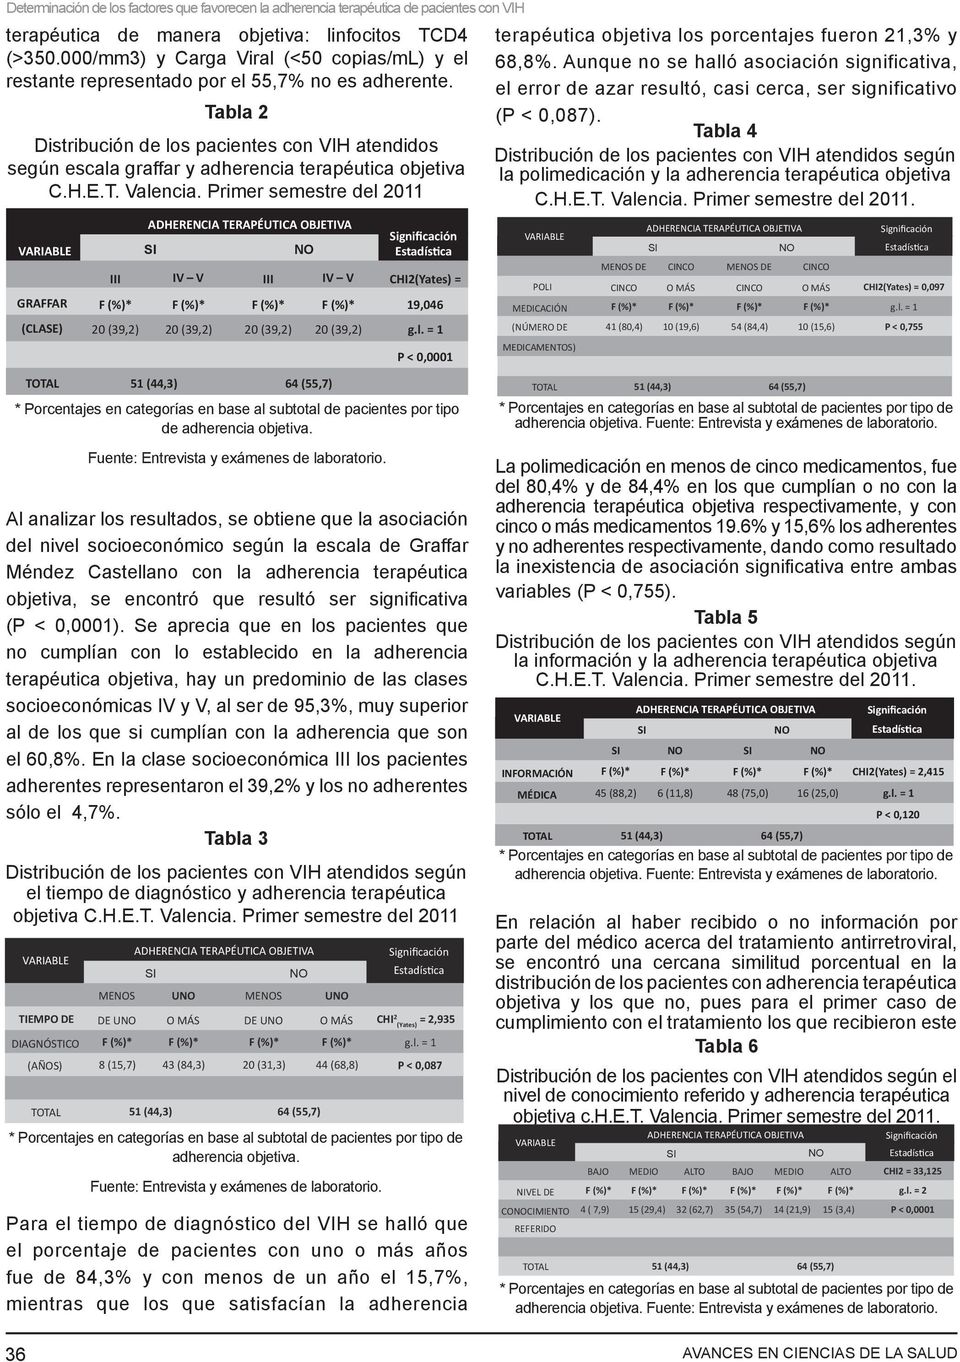 Tabla 2 Distribución de los pacientes con VIH atendidos según escala graffar y adherencia terapéutica objetiva C.H.E.T. Valencia.